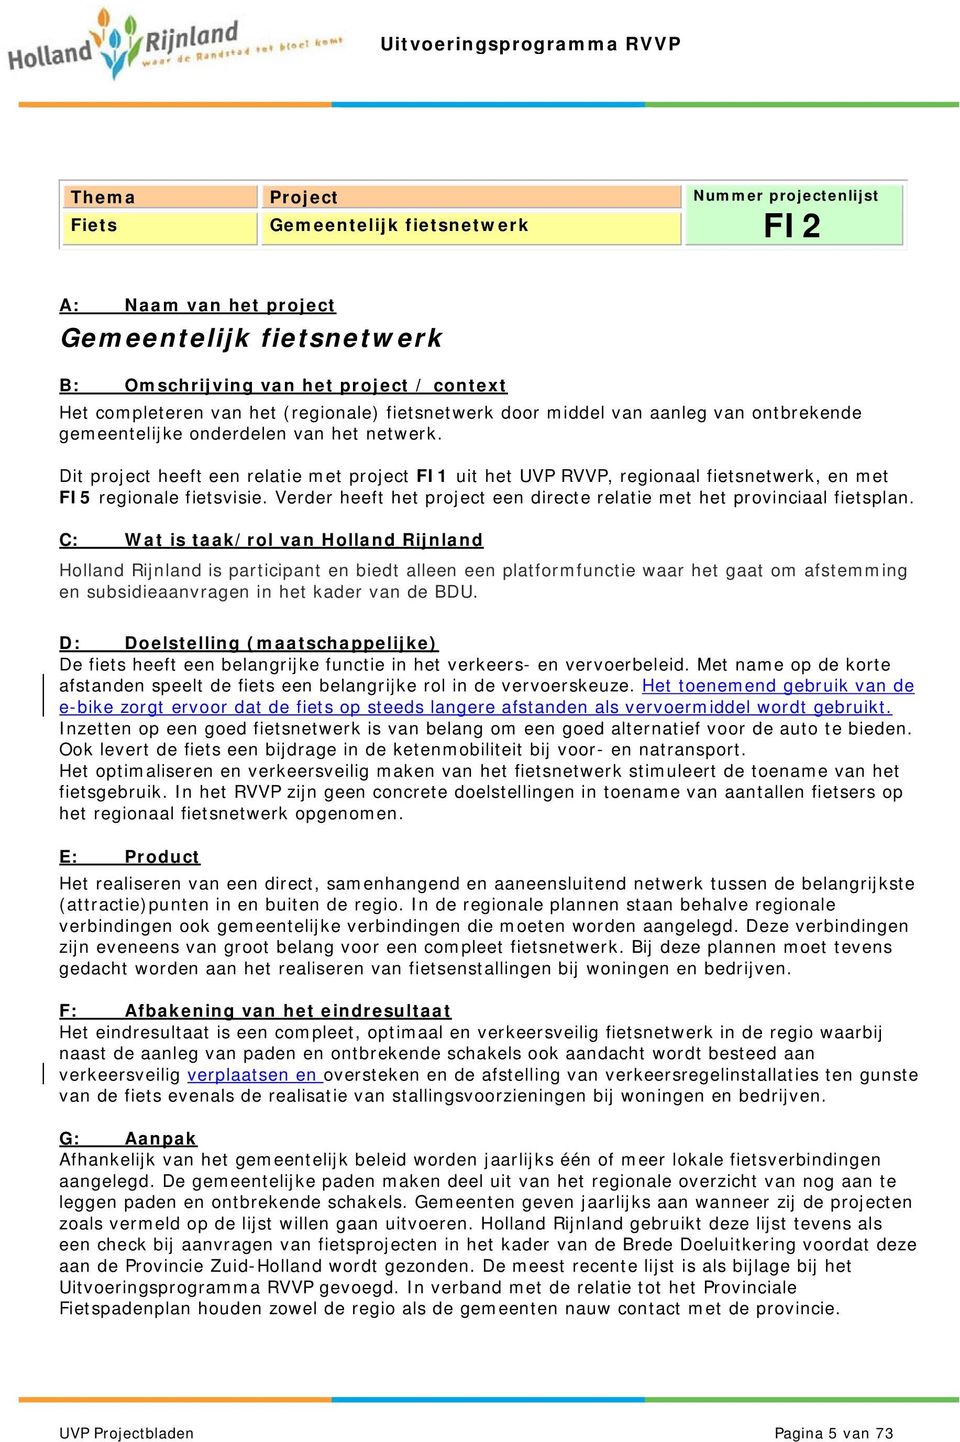 Holland Rijnland is participant en biedt alleen een platformfunctie waar het gaat om afstemming en subsidieaanvragen in het kader van de BDU.